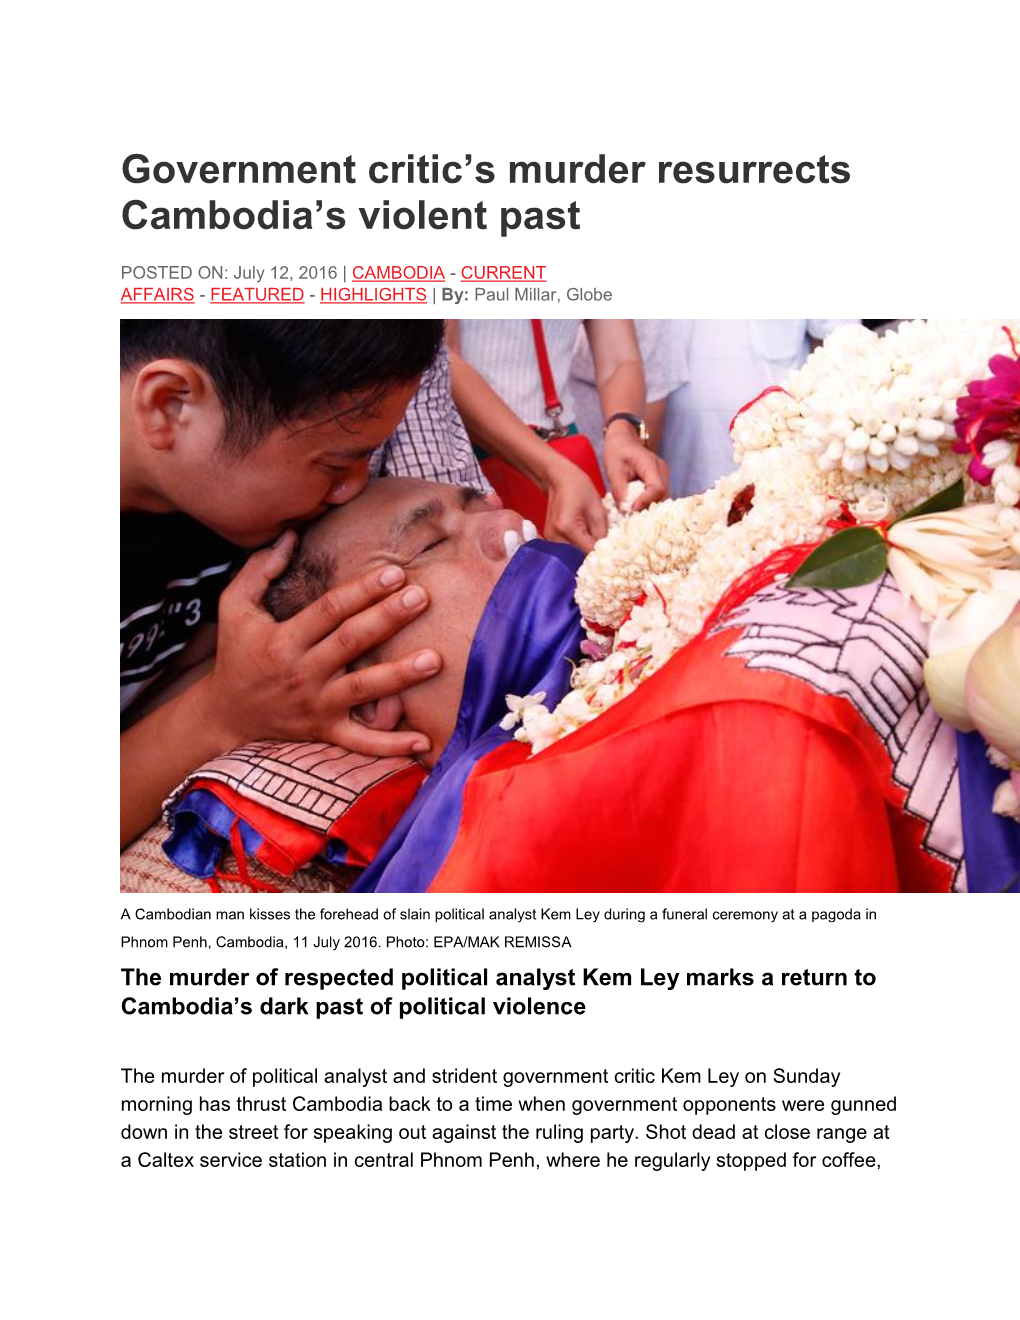 Government Critic's Murder Resurrects Cambodia's Violent Past